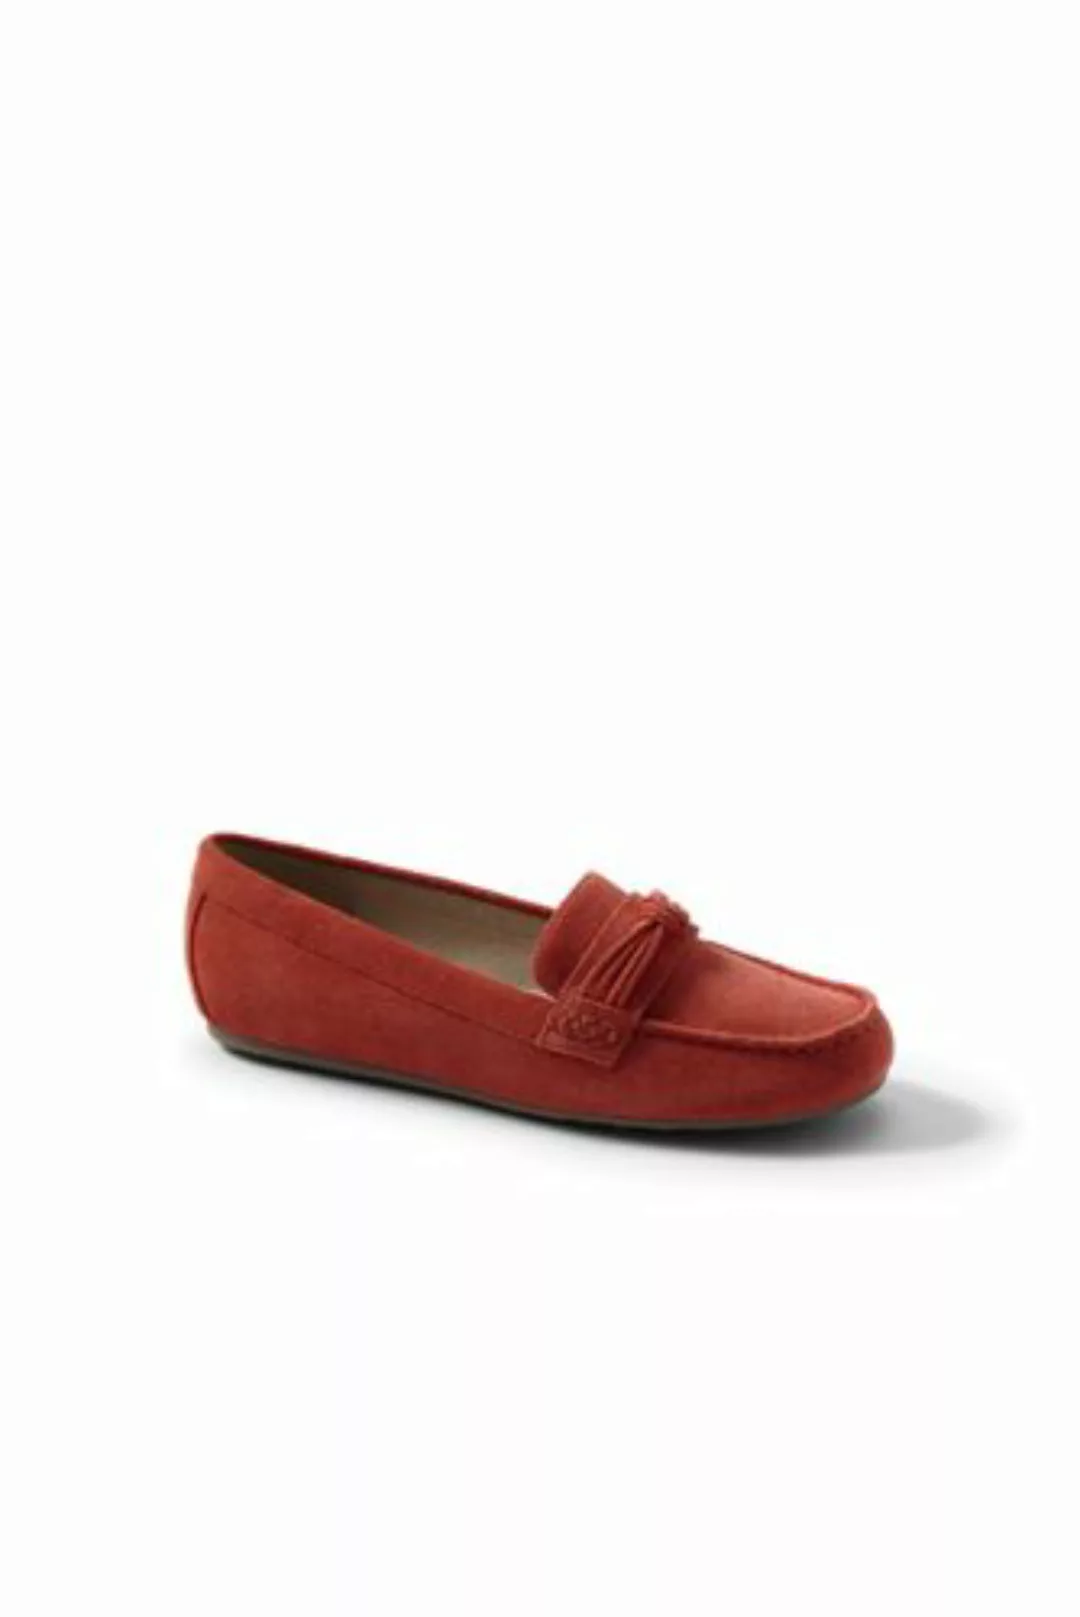 Komfort-Pennyloafer mit Knotendetail, Damen, Größe: 40 Weit, Rot, Leder, by günstig online kaufen